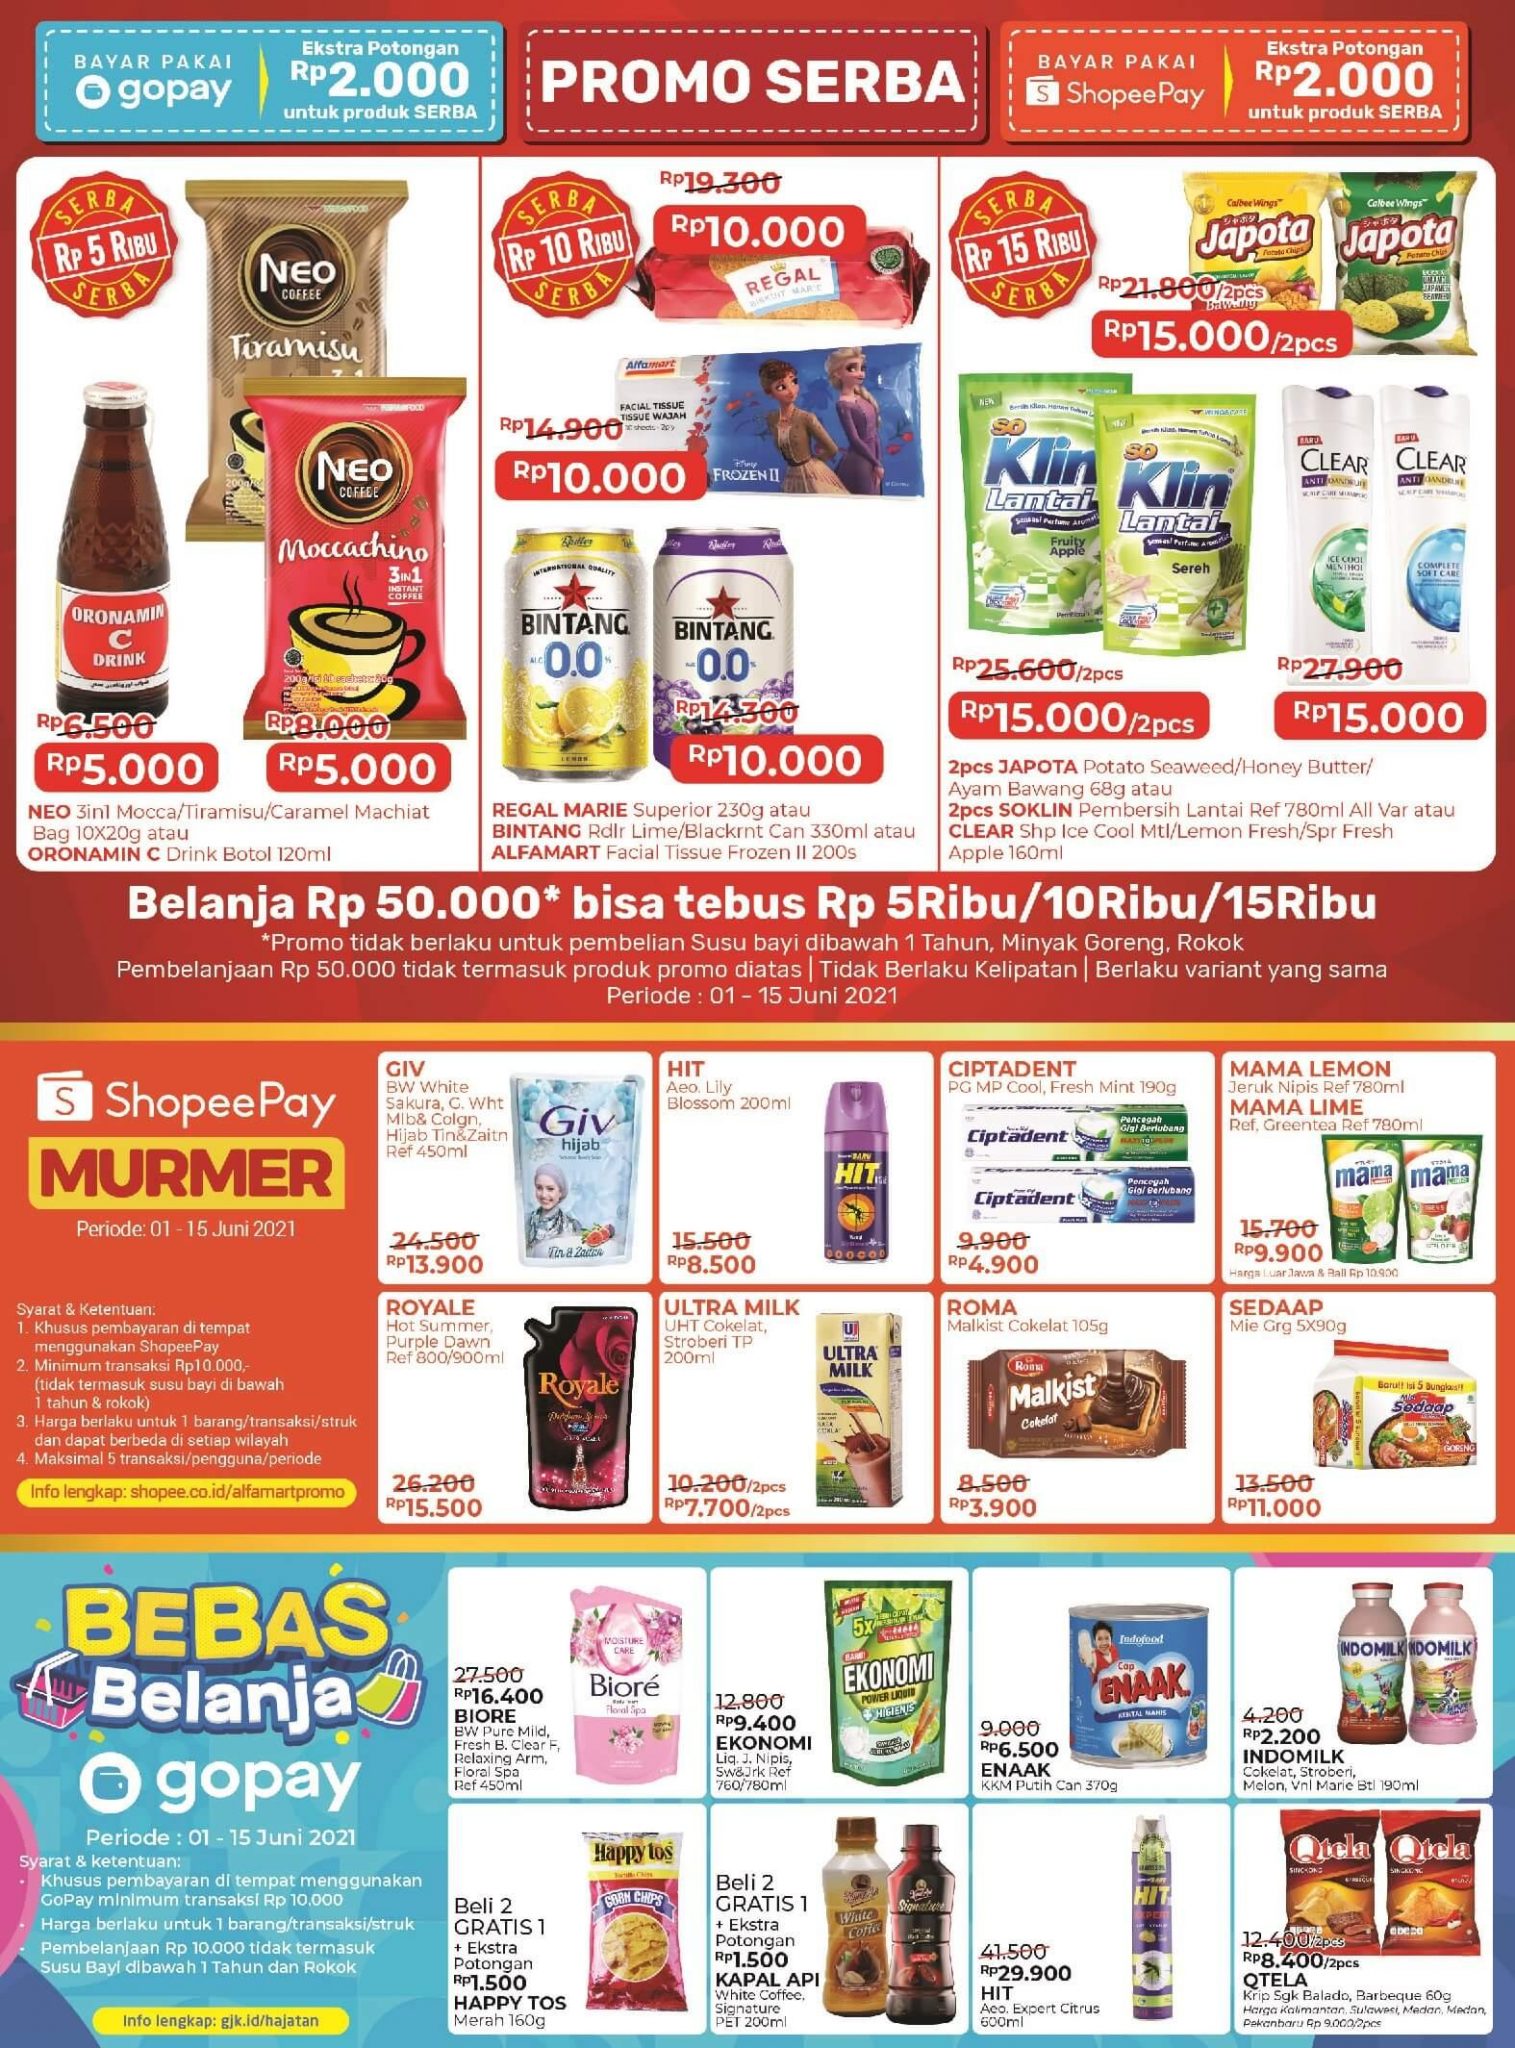 Promo Jsm Alfamart 4 6 Juni Dapatkan Harga Hemat Dari Popok Beras Minyak Susu Aneka Snack Halaman 3 Wartakotalive Com